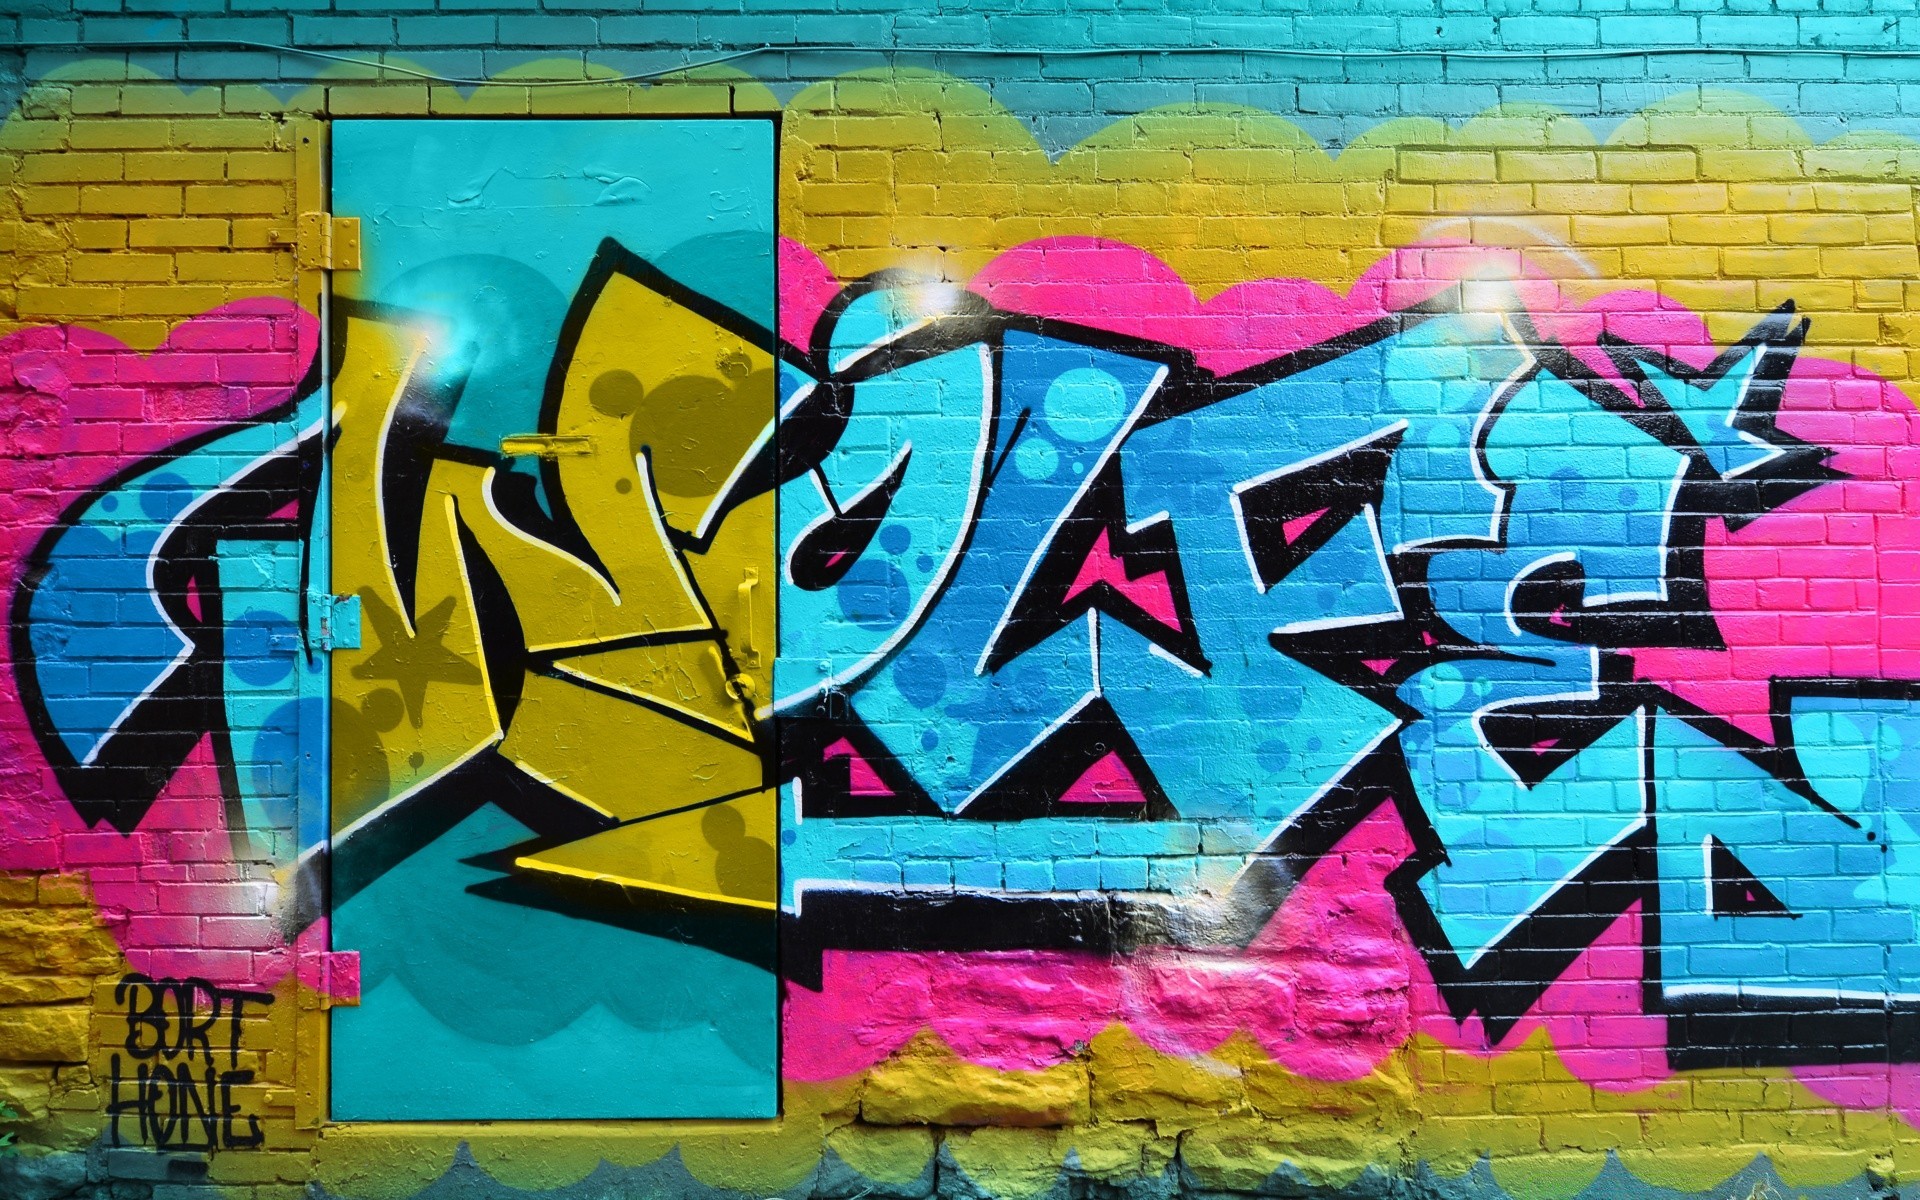 граффити вандализм спрей аэрограф стены фотообои искусство художественный незаконные хоп творчество бедра подпись гетто улица иллюстрация городской дизайн лажа цвет